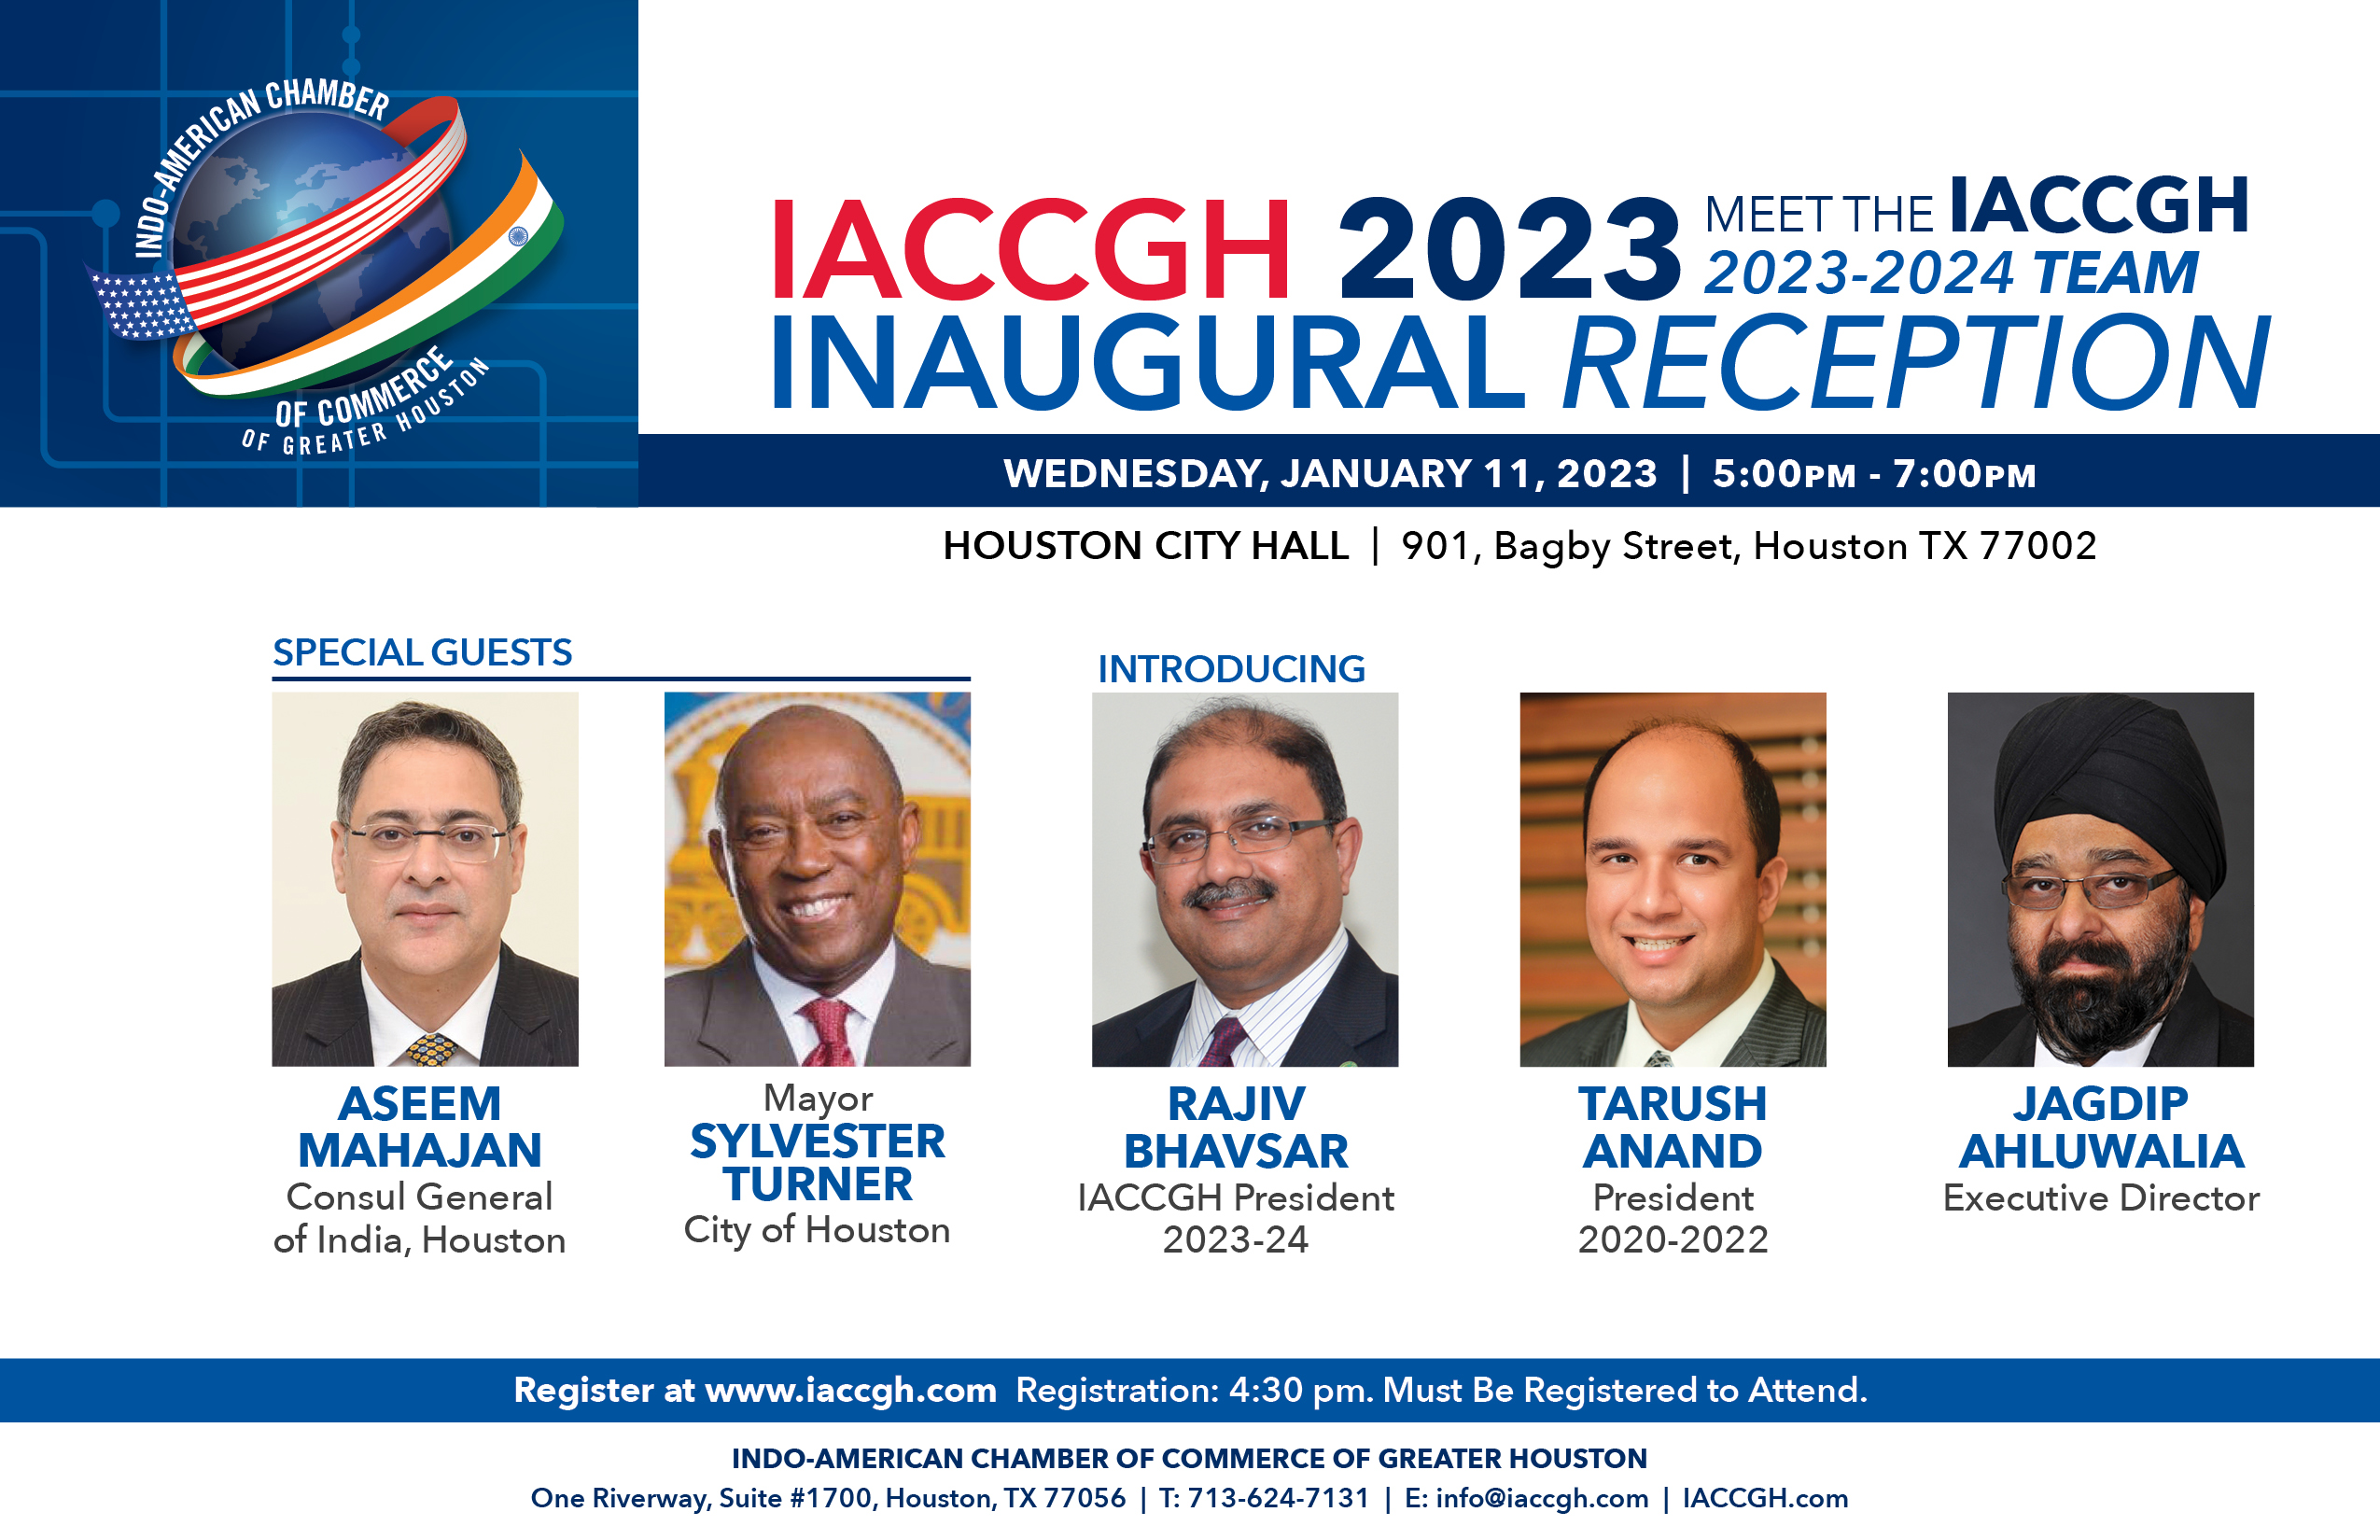 IACCGH 2023 Inaugural Reception